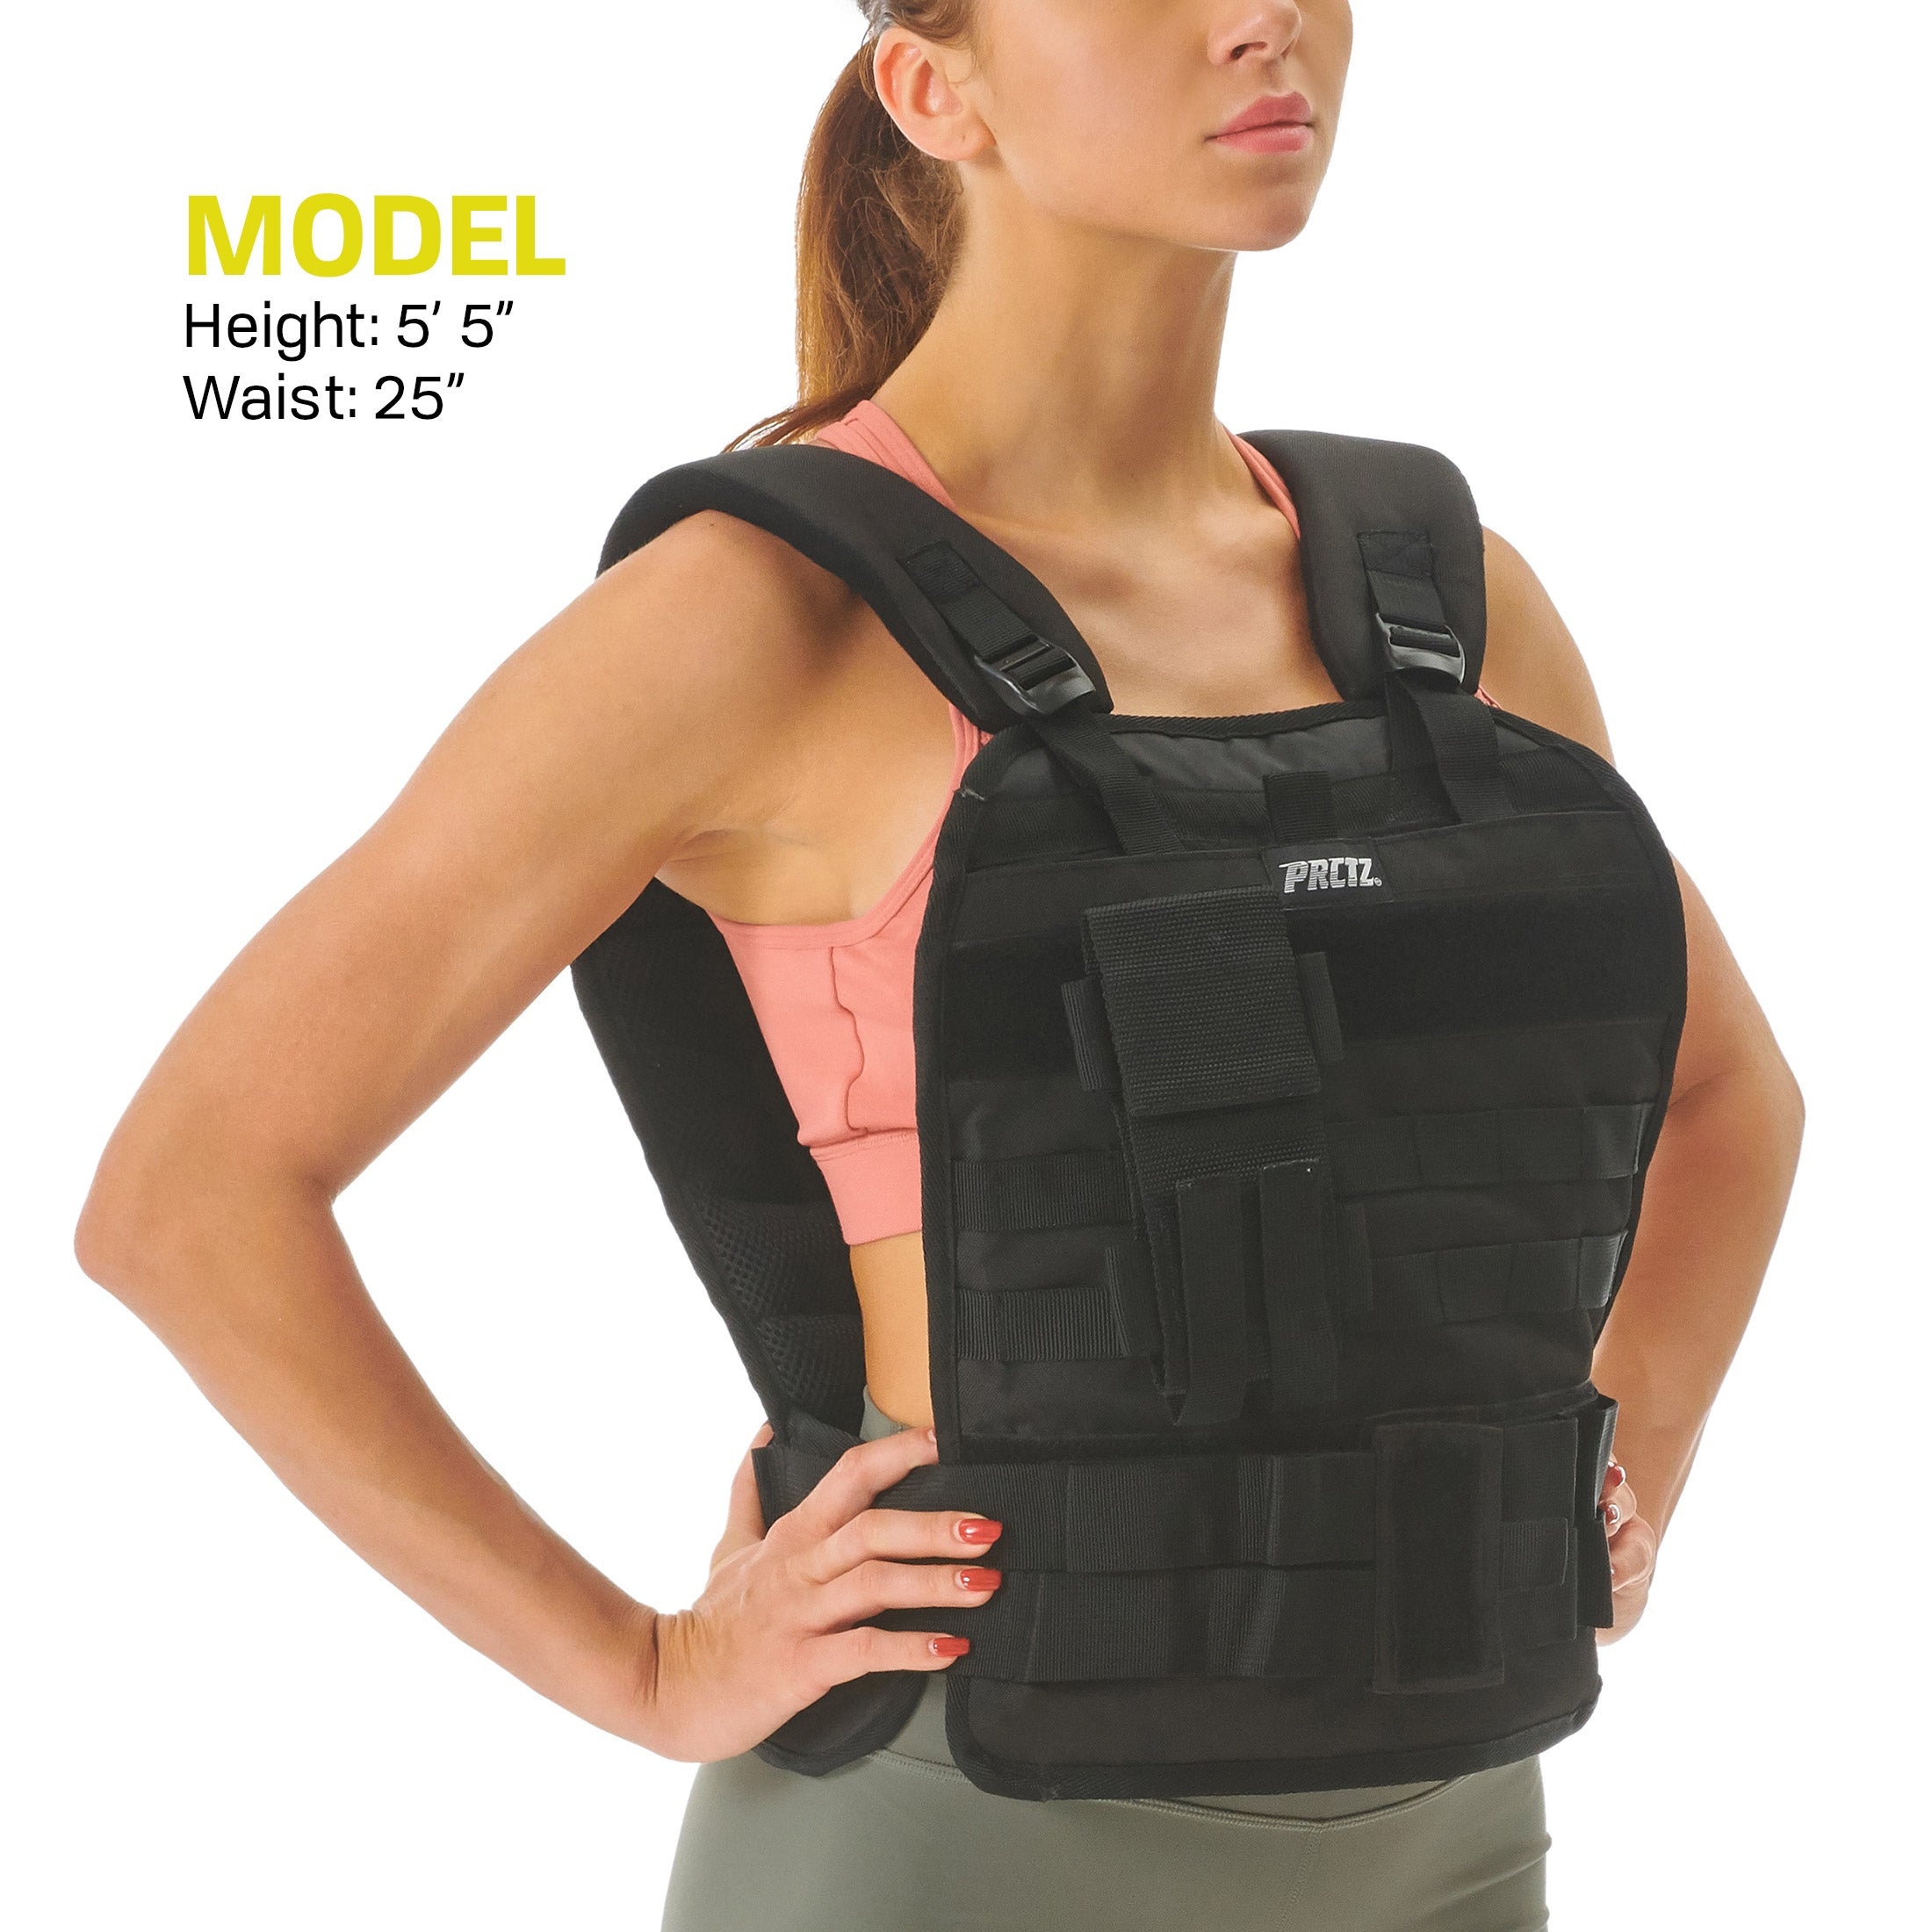 PRISP Adjustable Weighted Training Vest - 10kg Weight Vest for